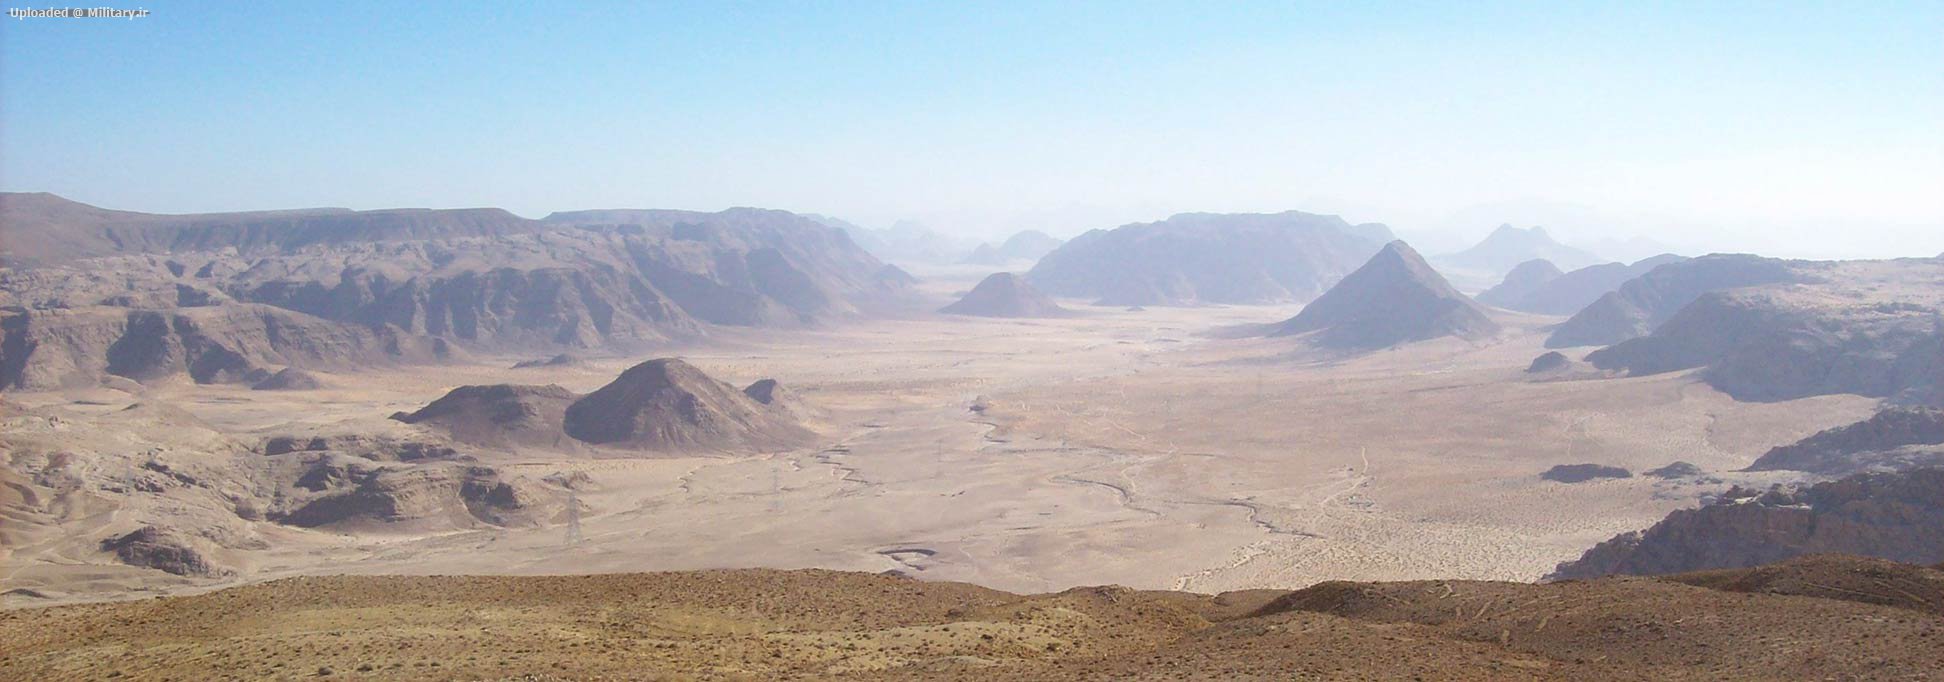 Wadi-Rum-North-banner.jpg